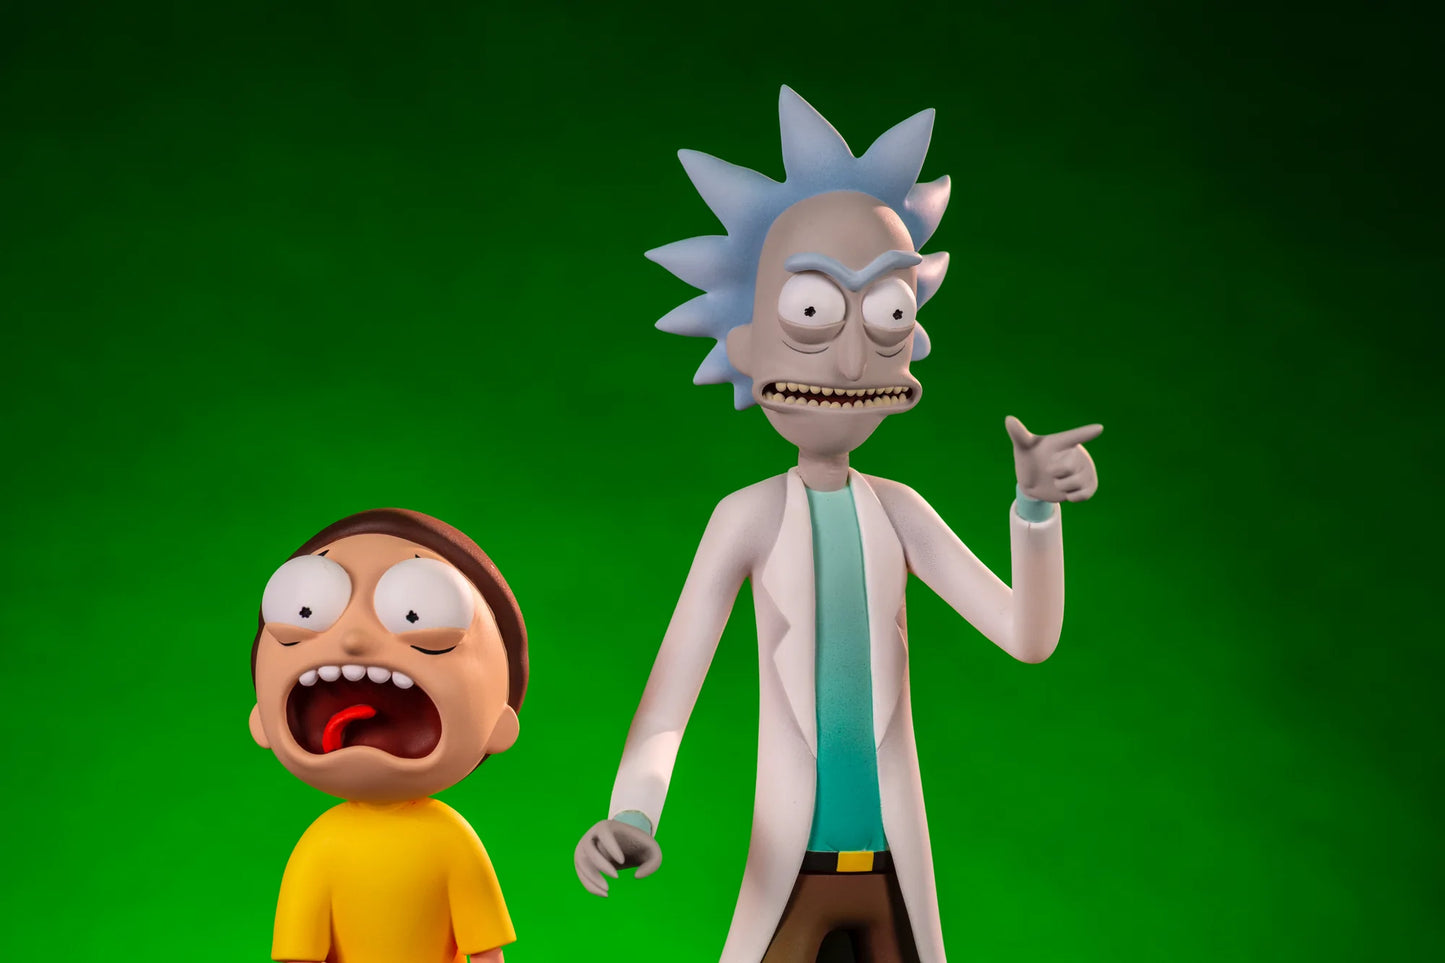 Rick & Morty Figure Set - Rick & Morty Mondo